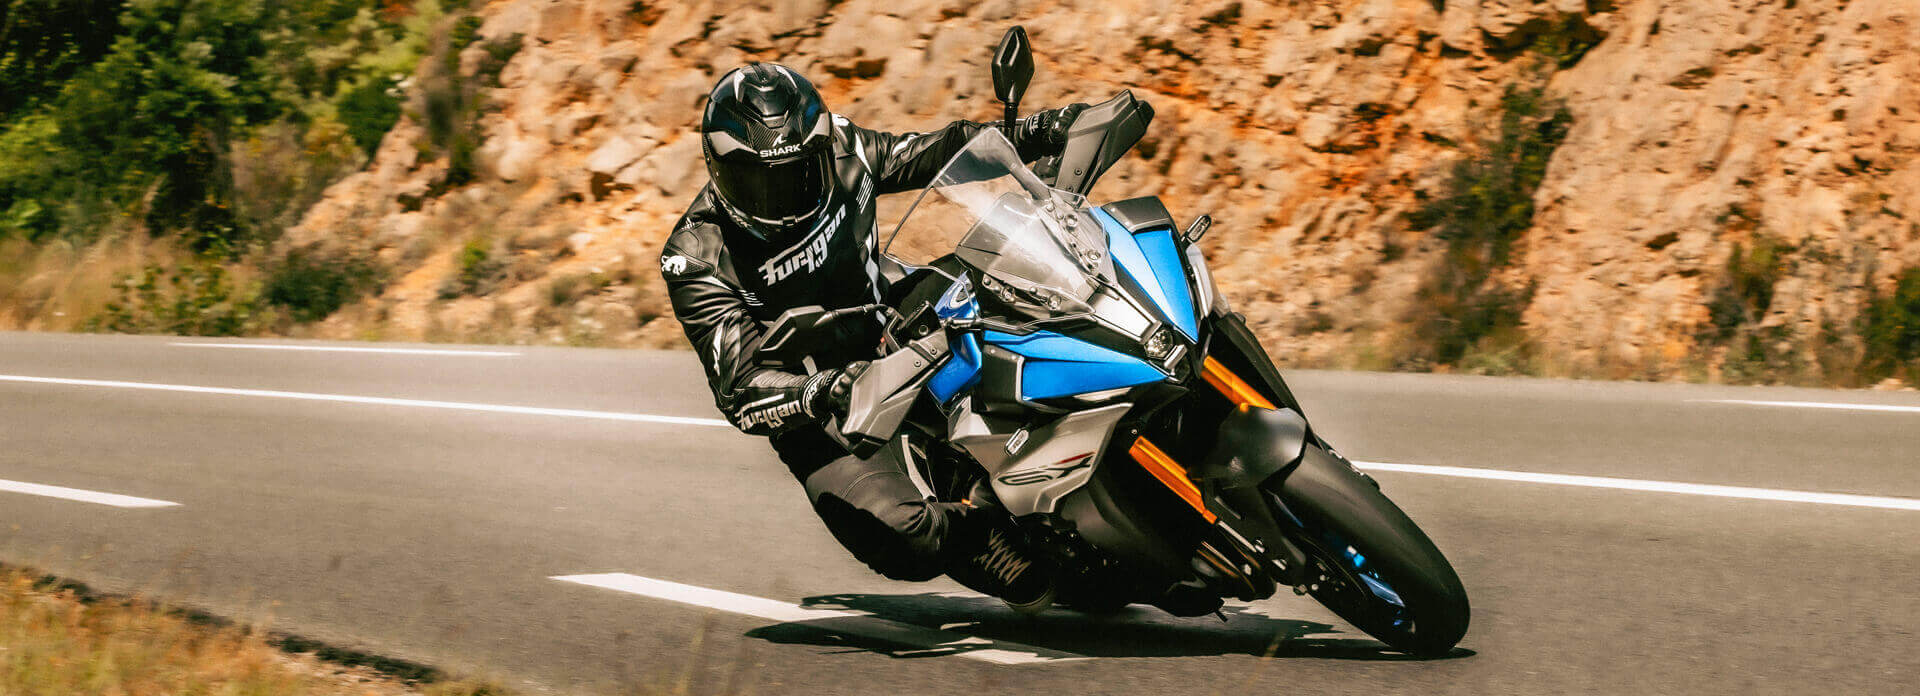 Suzuki_GSX10 Motorcycle